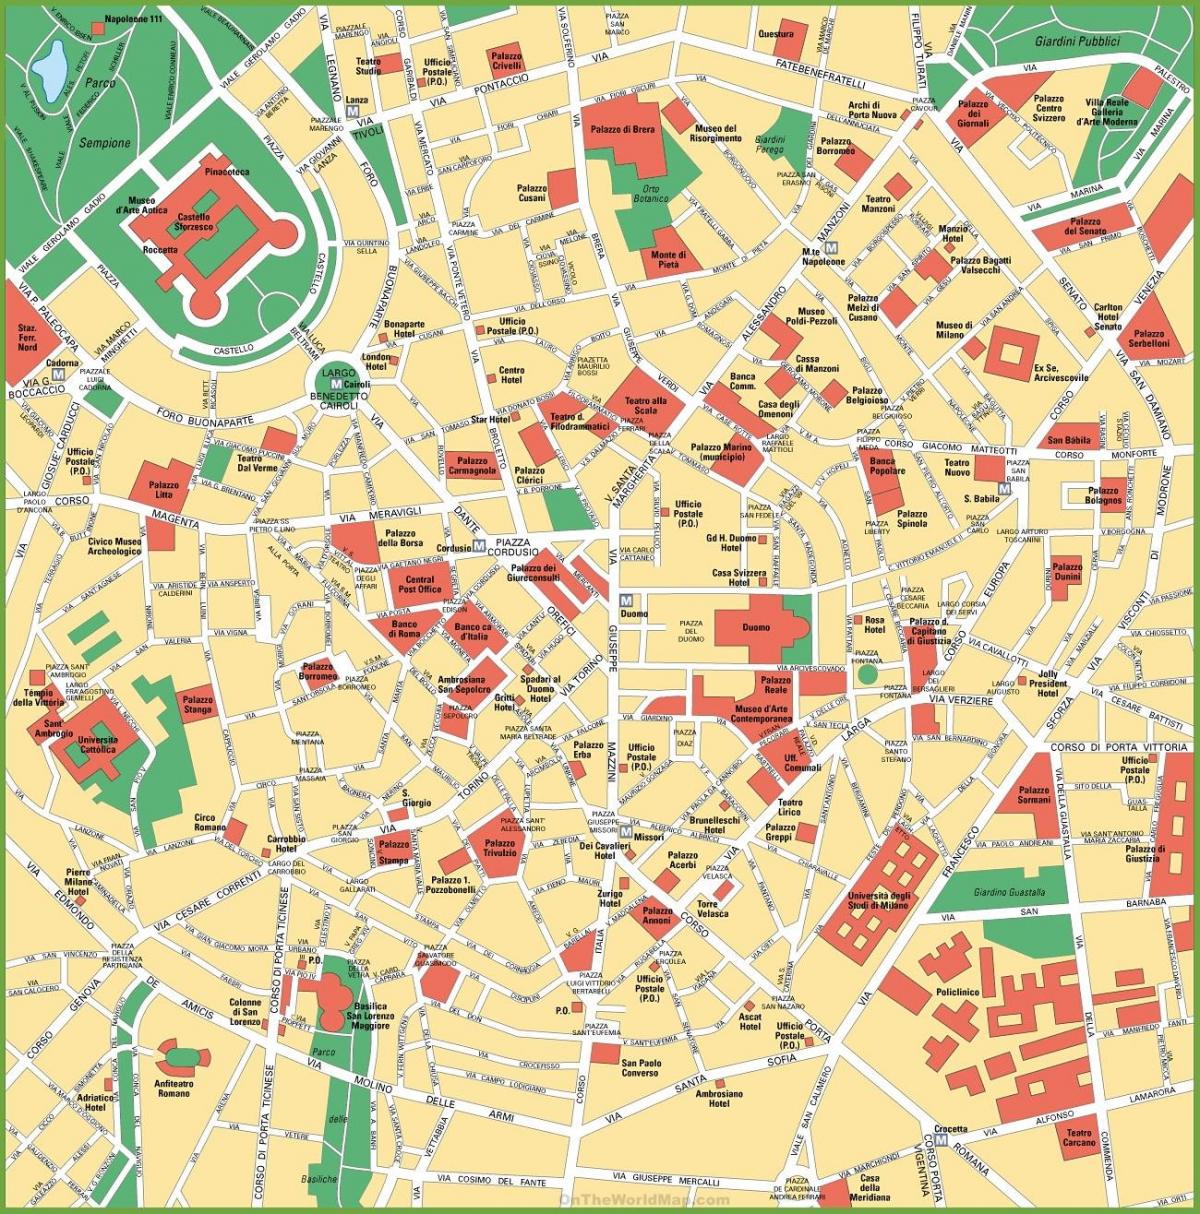 milano city center zemljevid